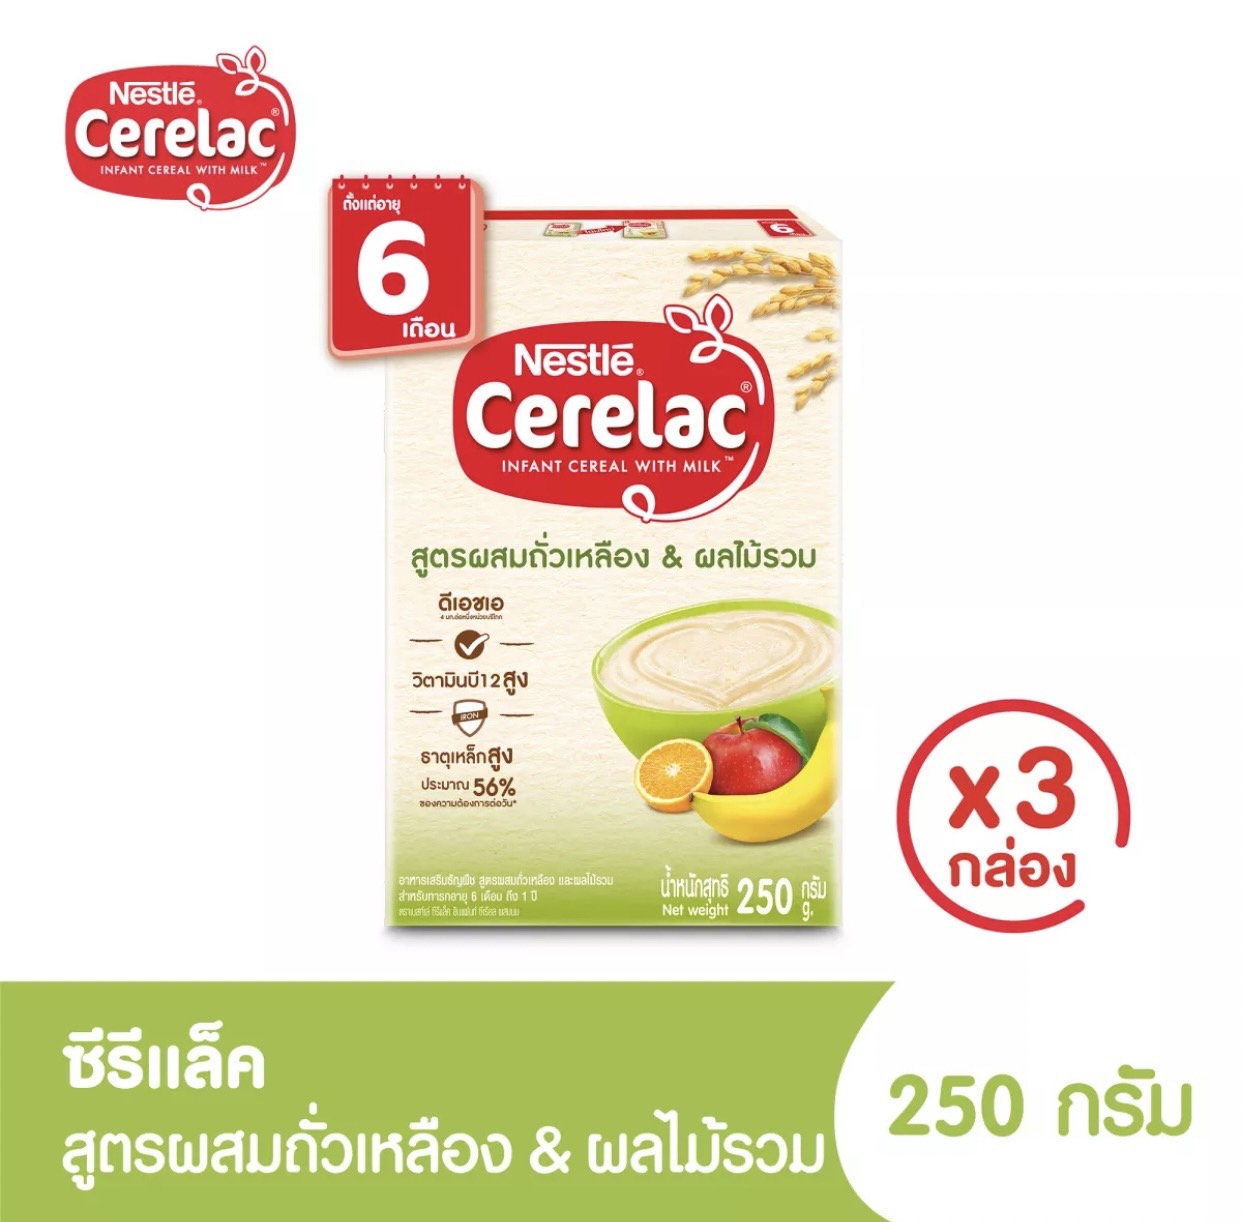 คำอธิบายเพิ่มเติมเกี่ยวกับ CERELAC ซีรีแล็ค อาหารเสริมสำหรับเด็ก ตั้งแต่อายุ 6 เดือนขึ้นไป ขนาด 200/250 มล แพ็ค 3 กล่อง